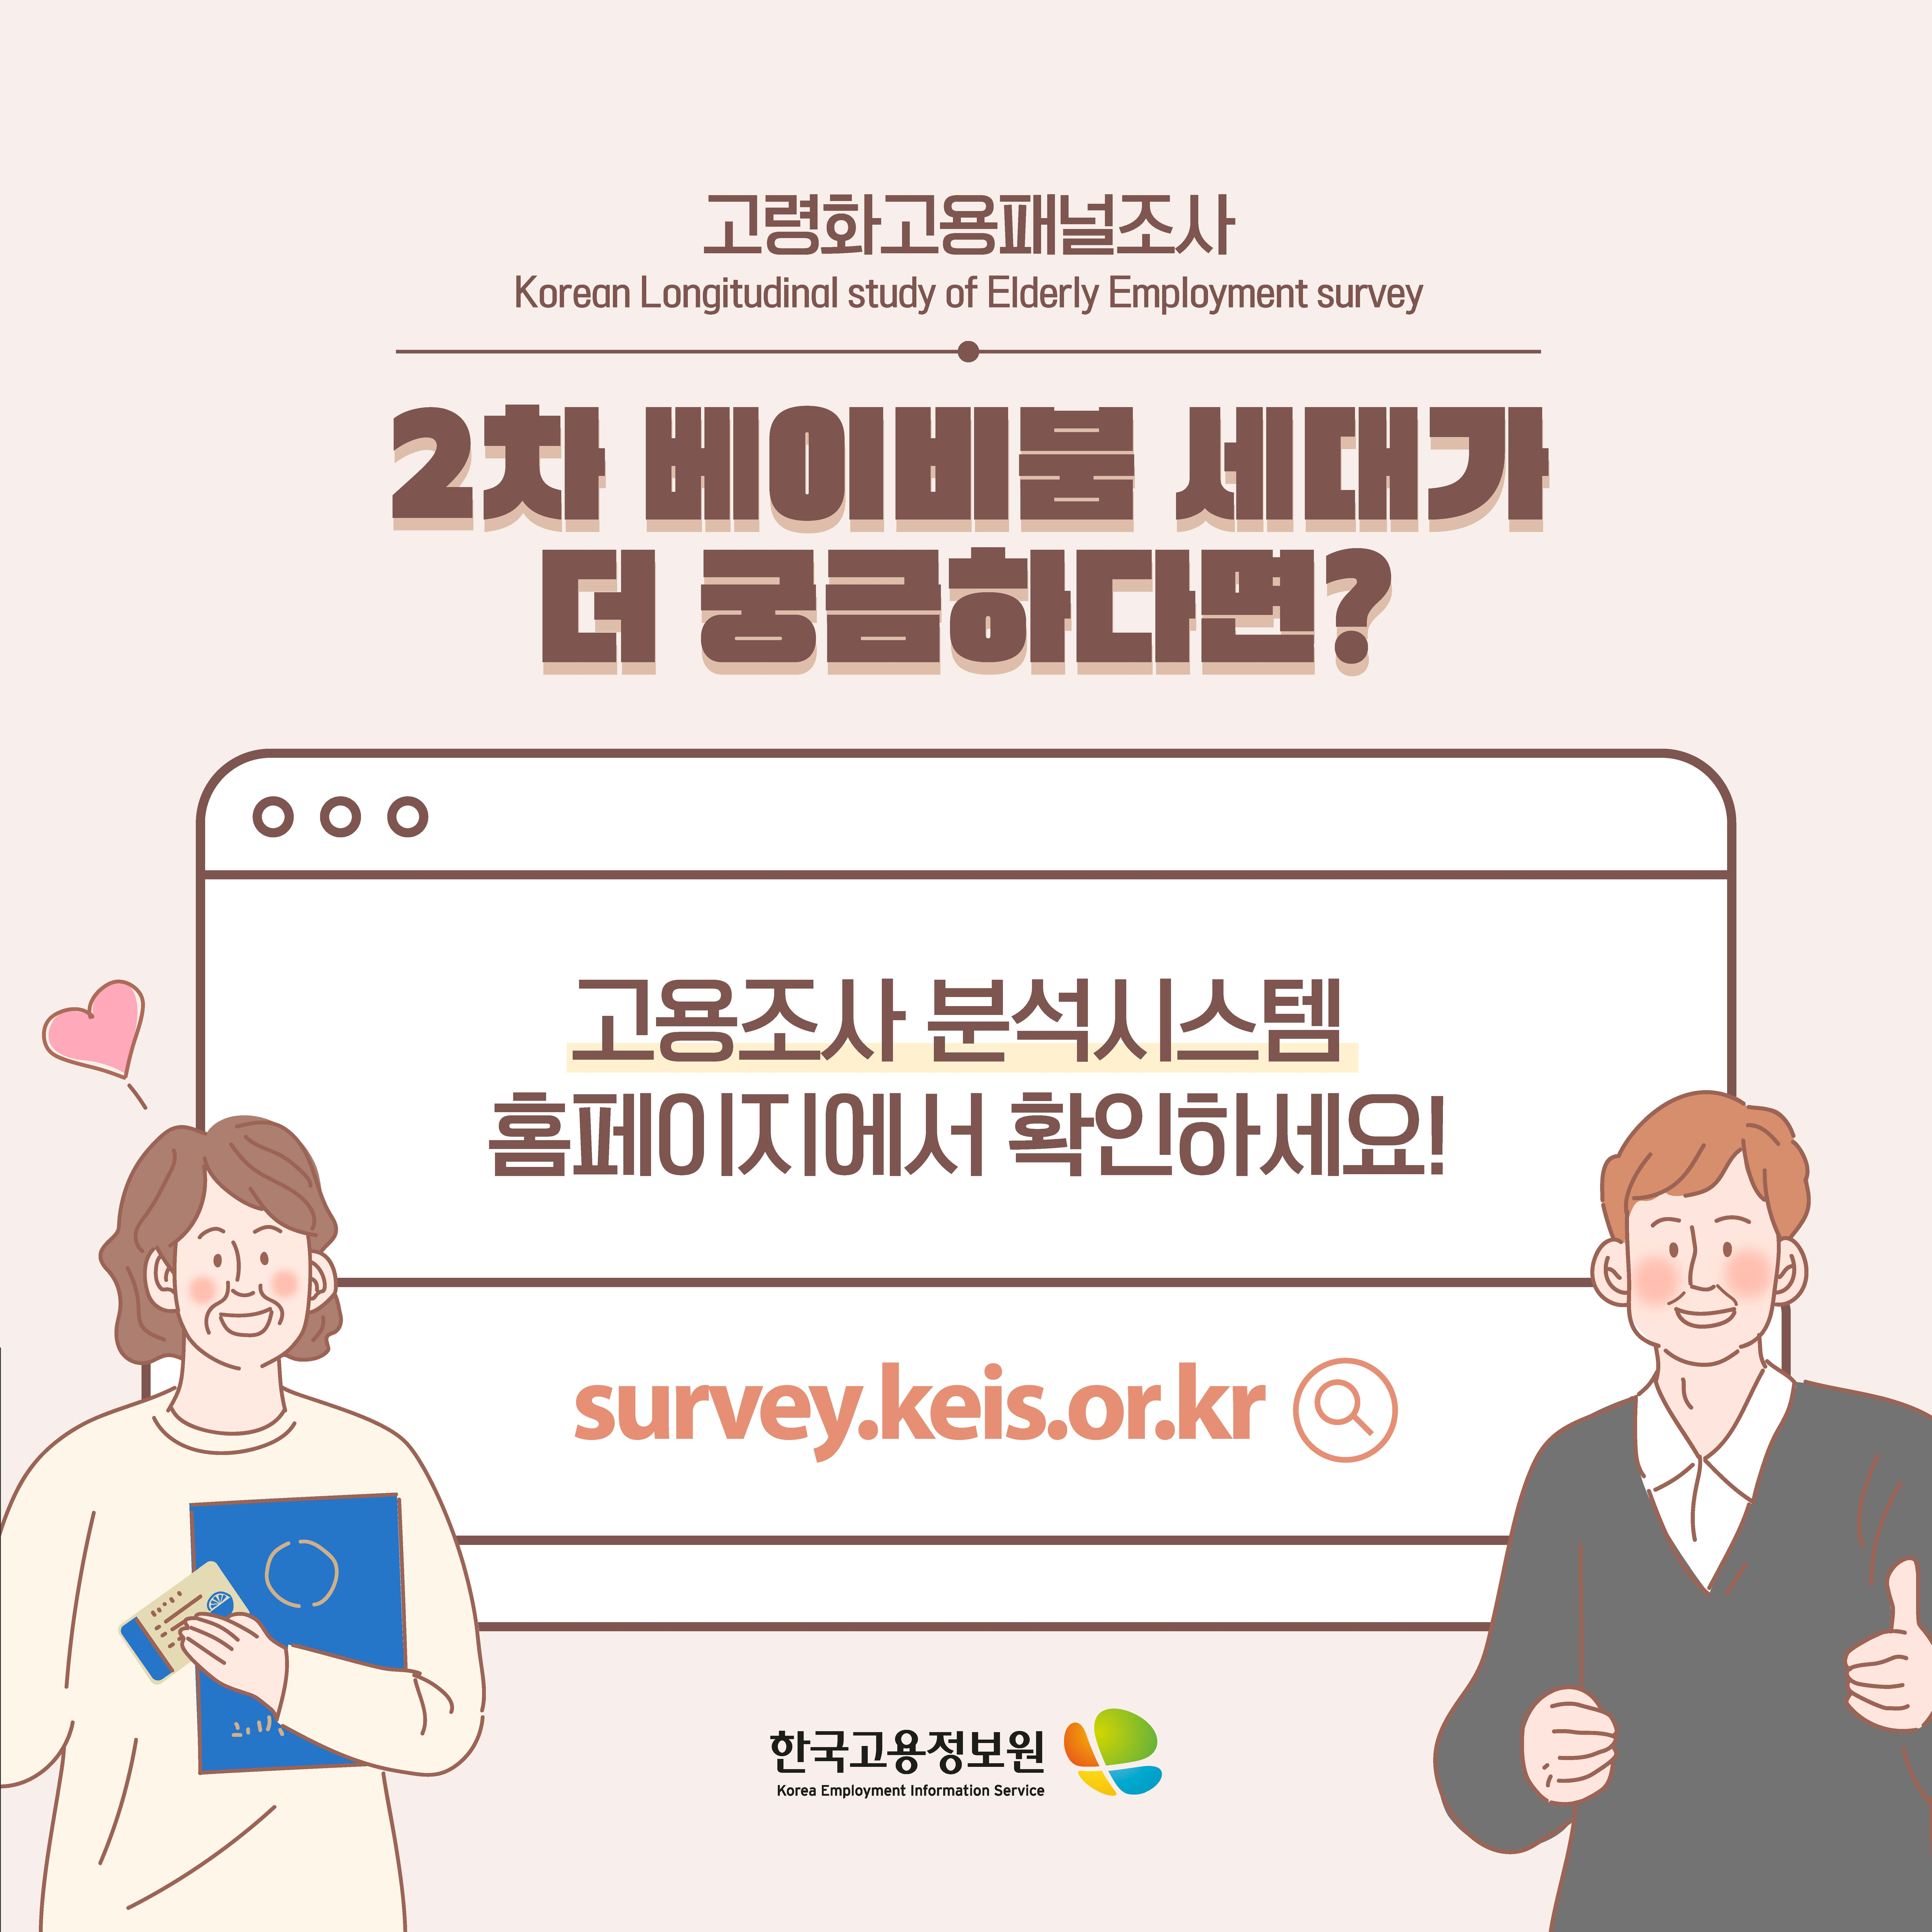 고령화고용패널조사
Korean Longitudinal study of Elderly Employment survey
2차 베이비붐 세대가 더 궁금하다면?
고용조사 분석시스템 홈페이지에서 확인하세요.
survey.keis.or.kr